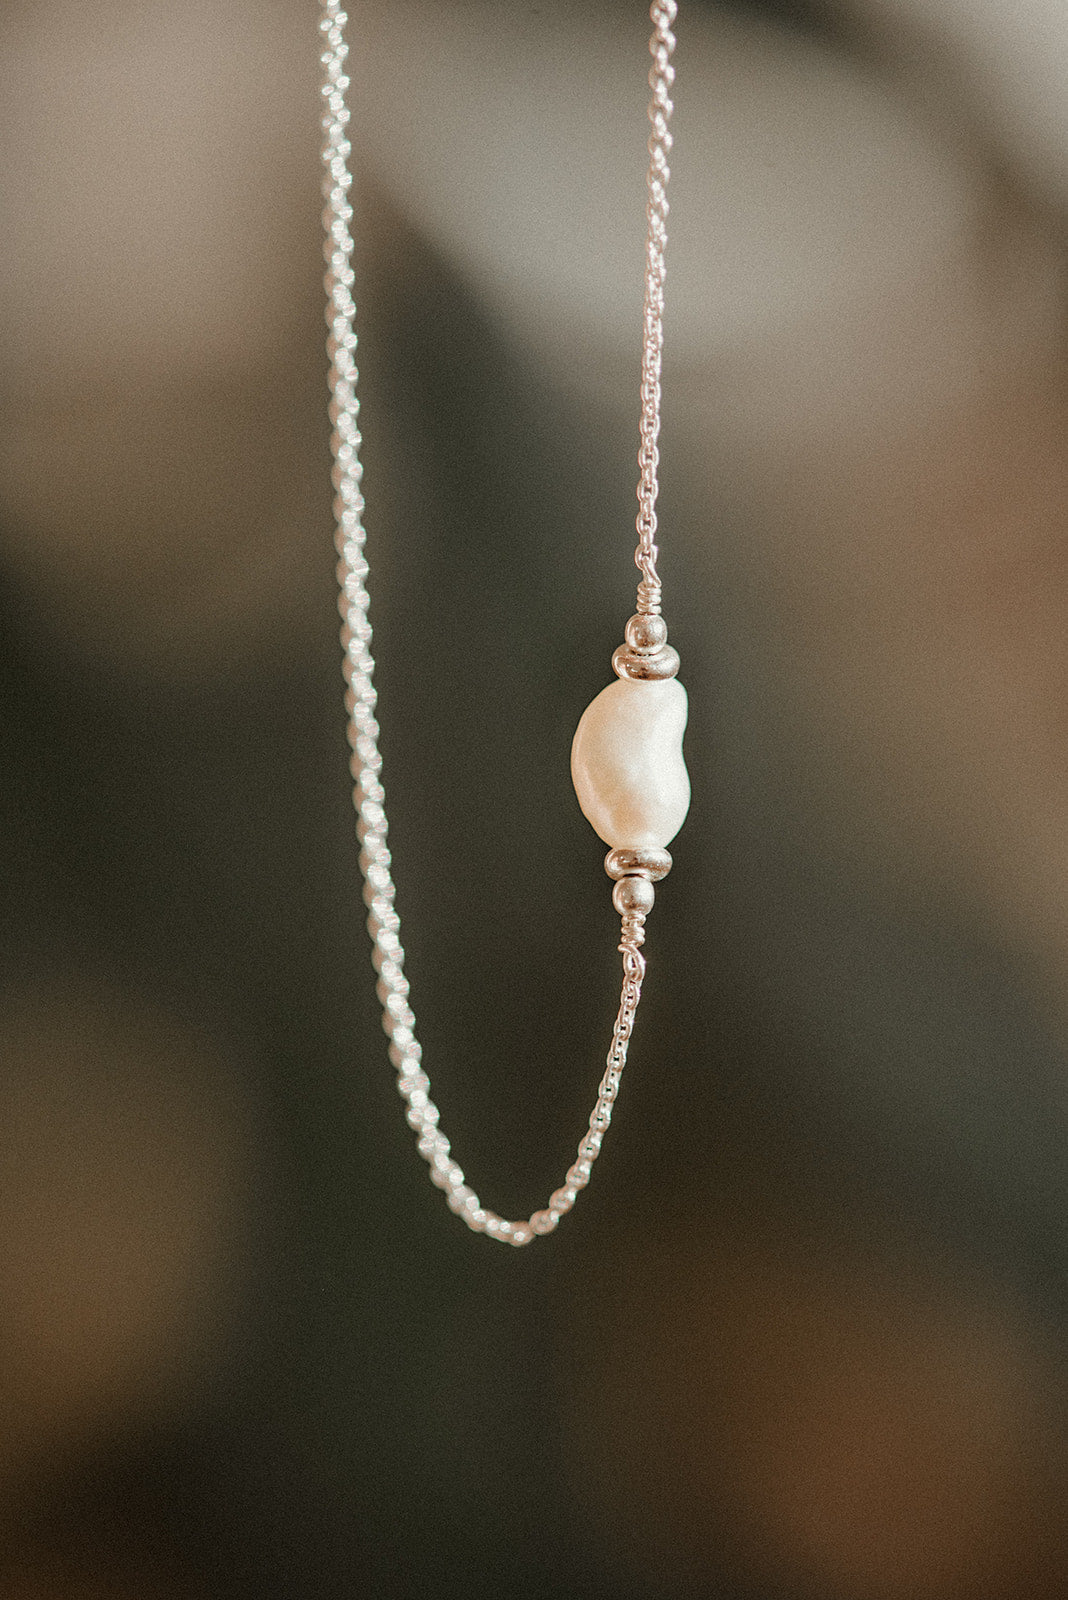 Náhrdelník s perlou. Stříbrný nebo pozlacený řetízek s přívěskem ze sladkovodní perly.